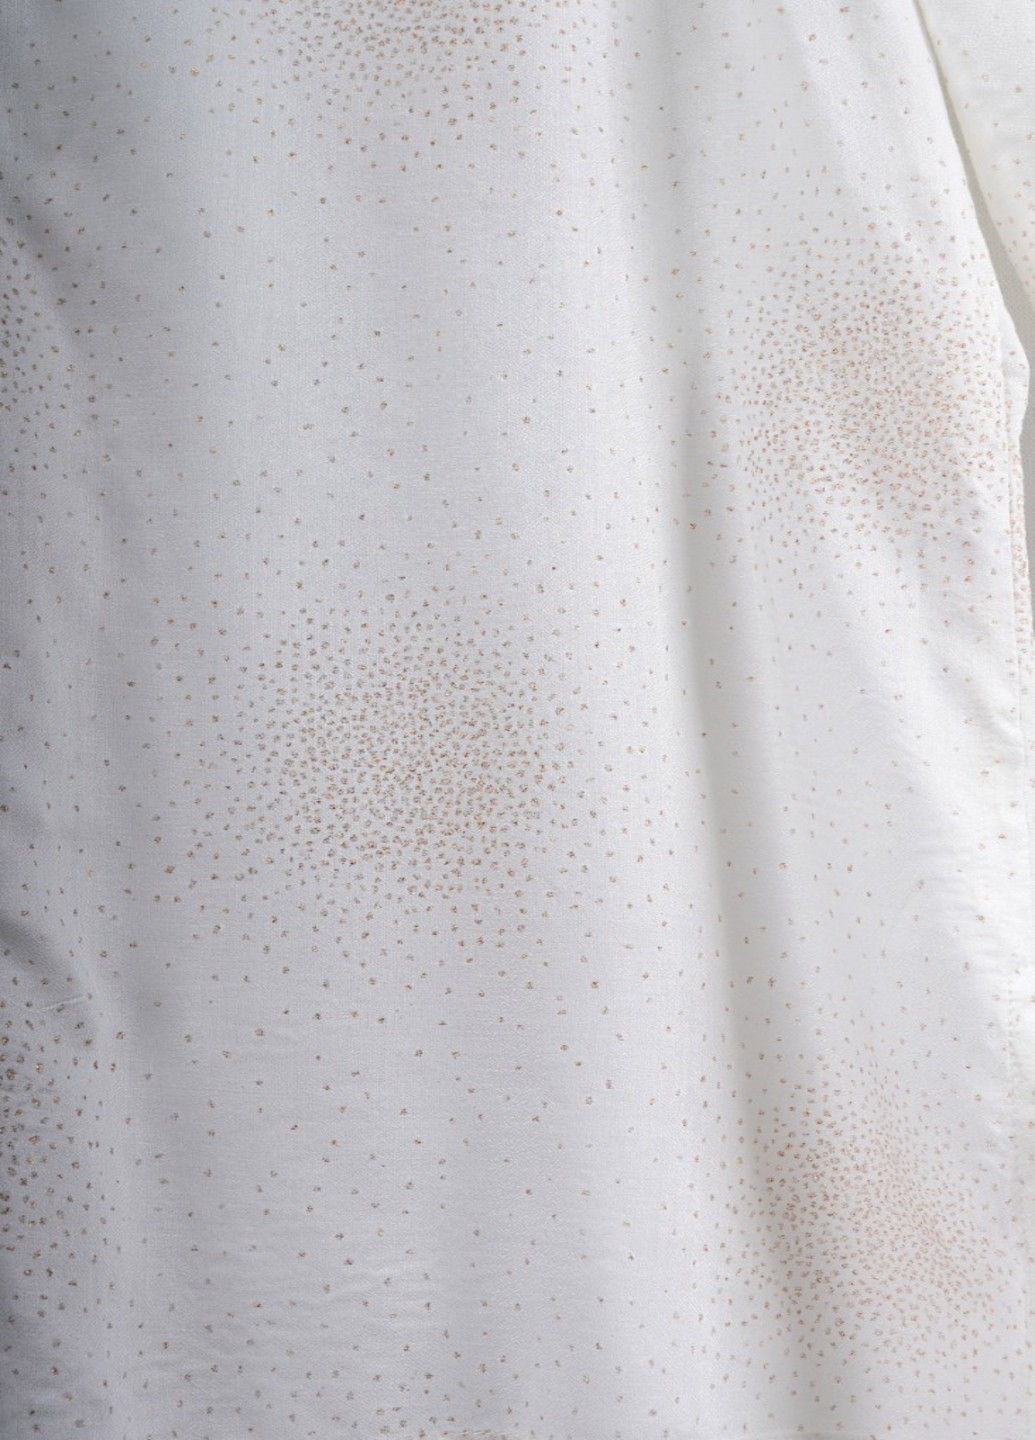 Молочная демисезонная блуза-рубашка с принтом в68 Luxik